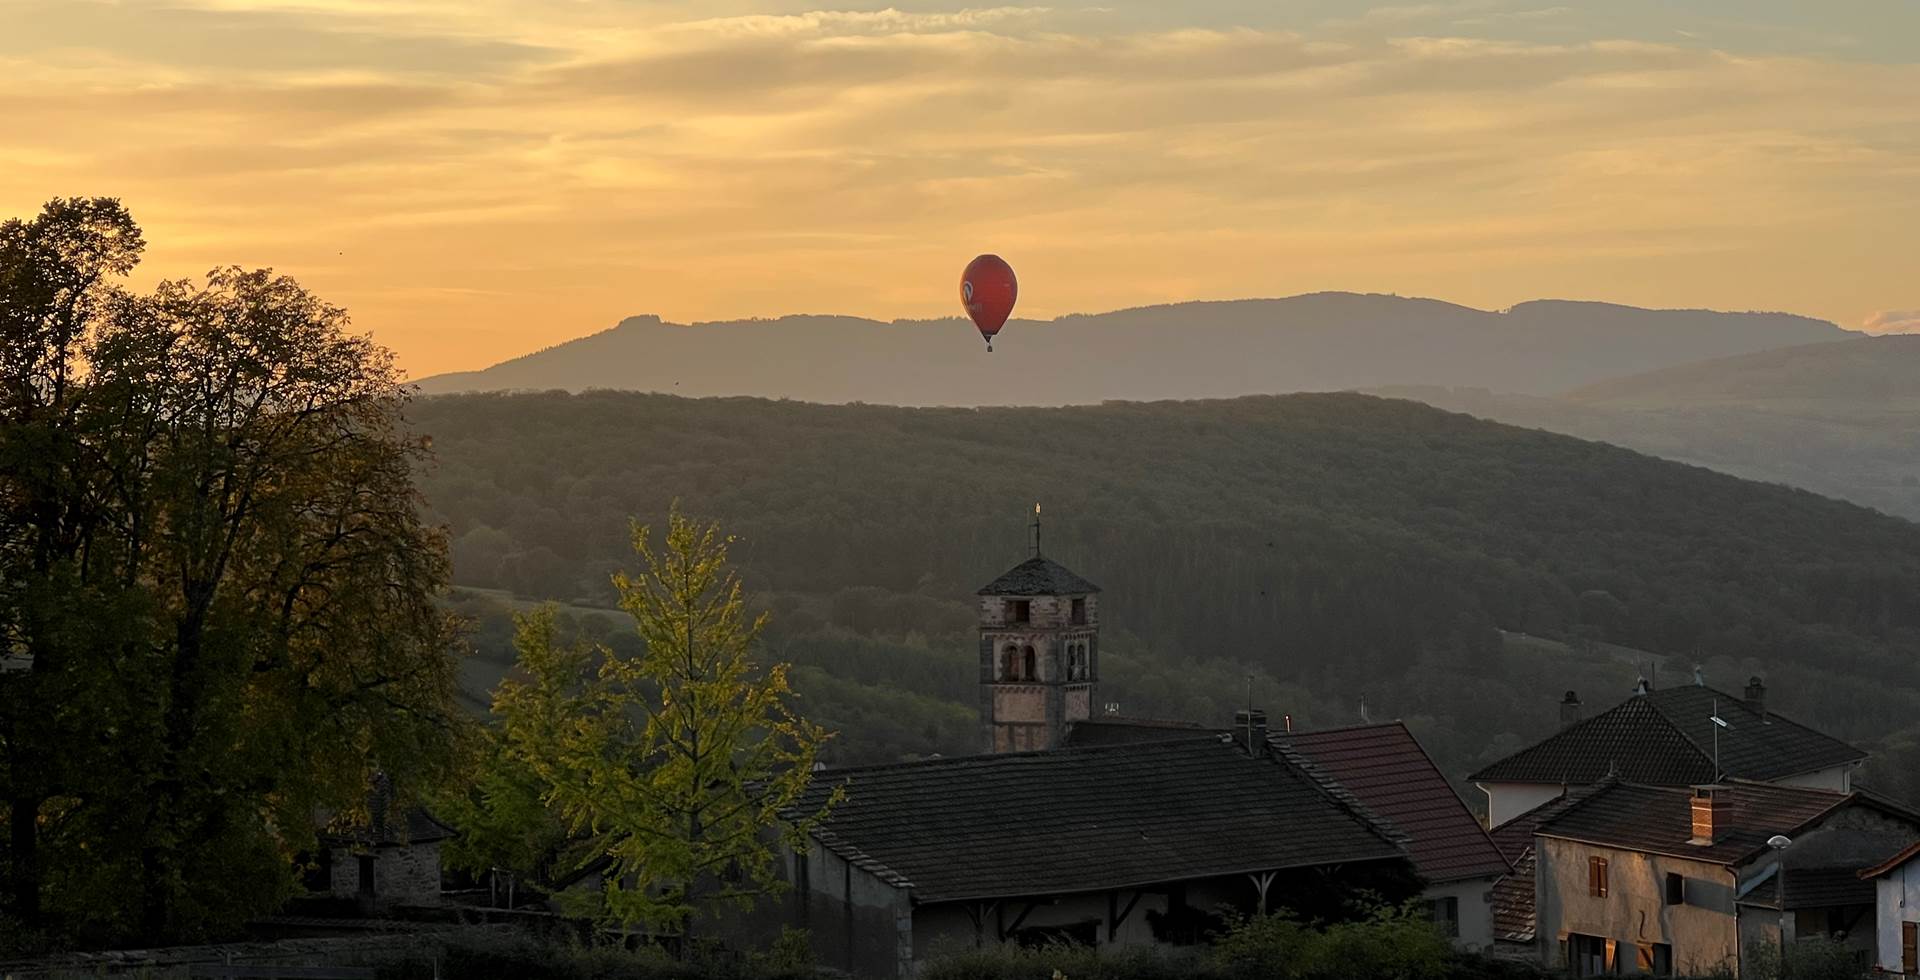 Vue sur le village de Bergesserin et montgolfière "route71"